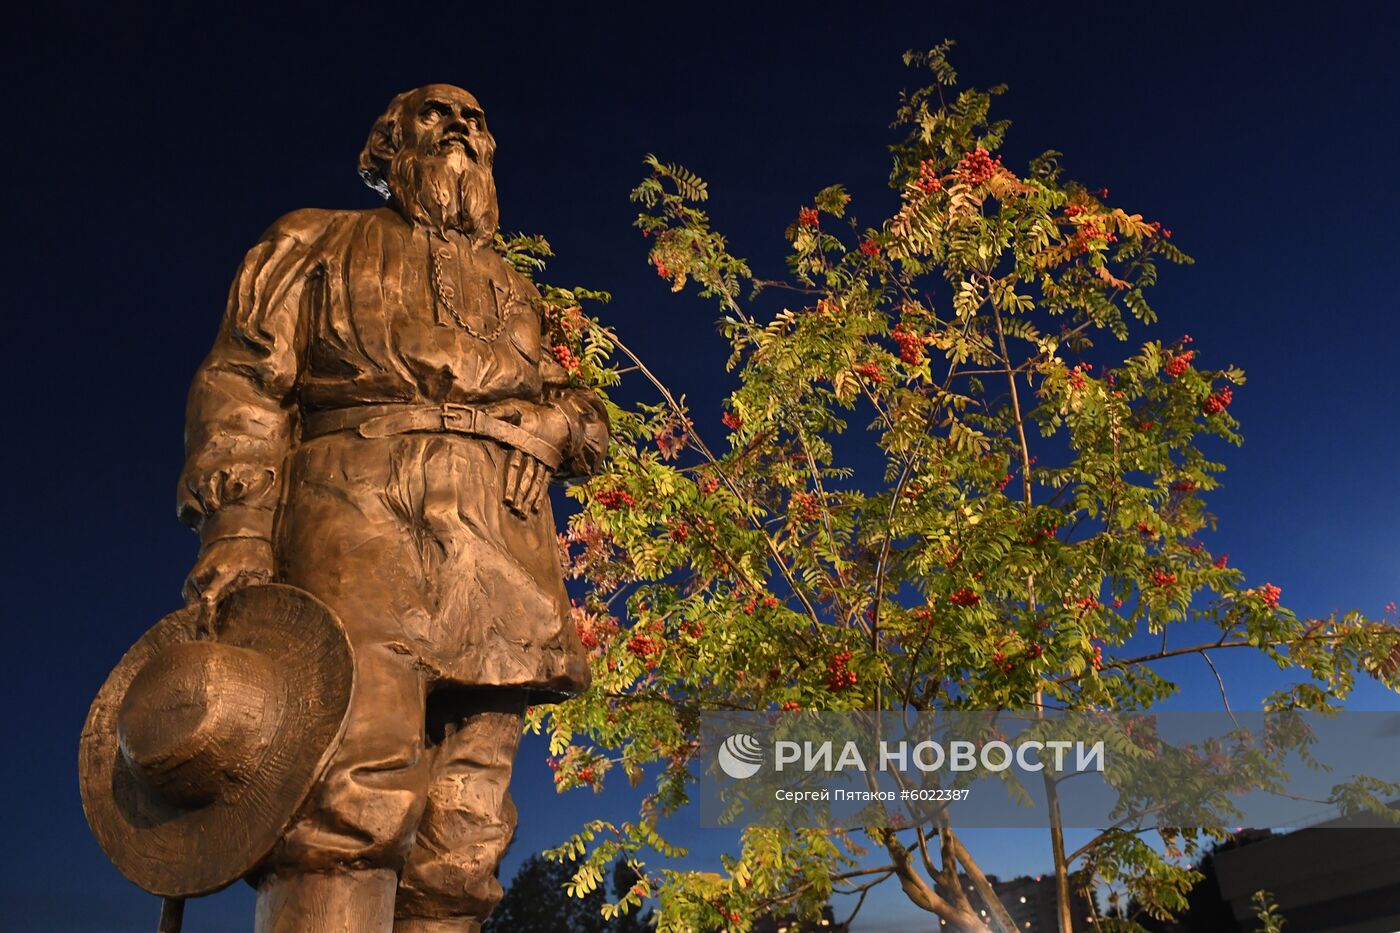 Открытие памятника писателю Льву Толстому